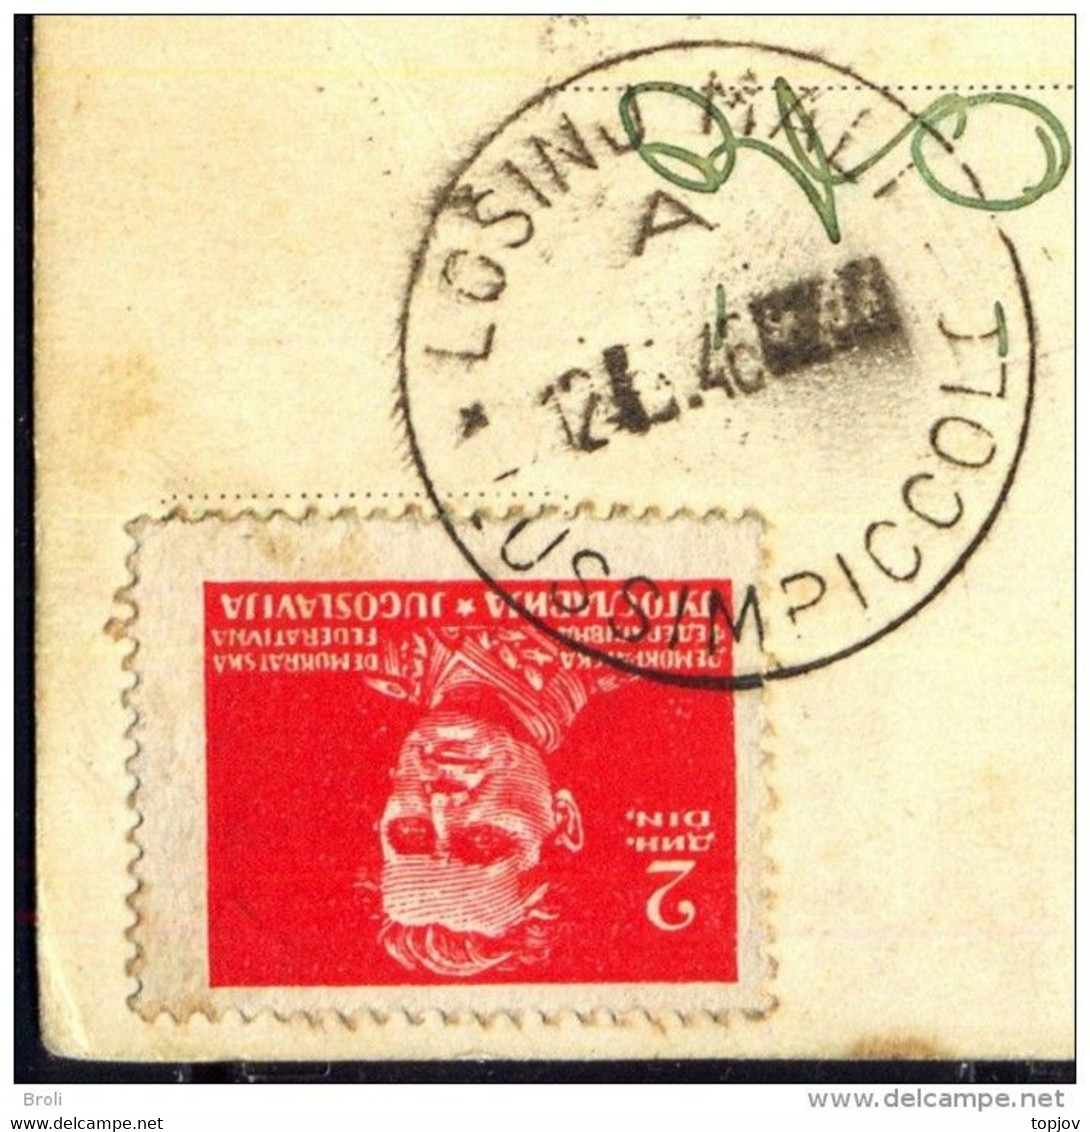 JUGOSLAVIA - ISTRIA - ZONA B - ERROR - Postmark "LOSINJ MALI - LUSSIMPICCOLO" - 1946 - EXTREM RARE - Marcofilie